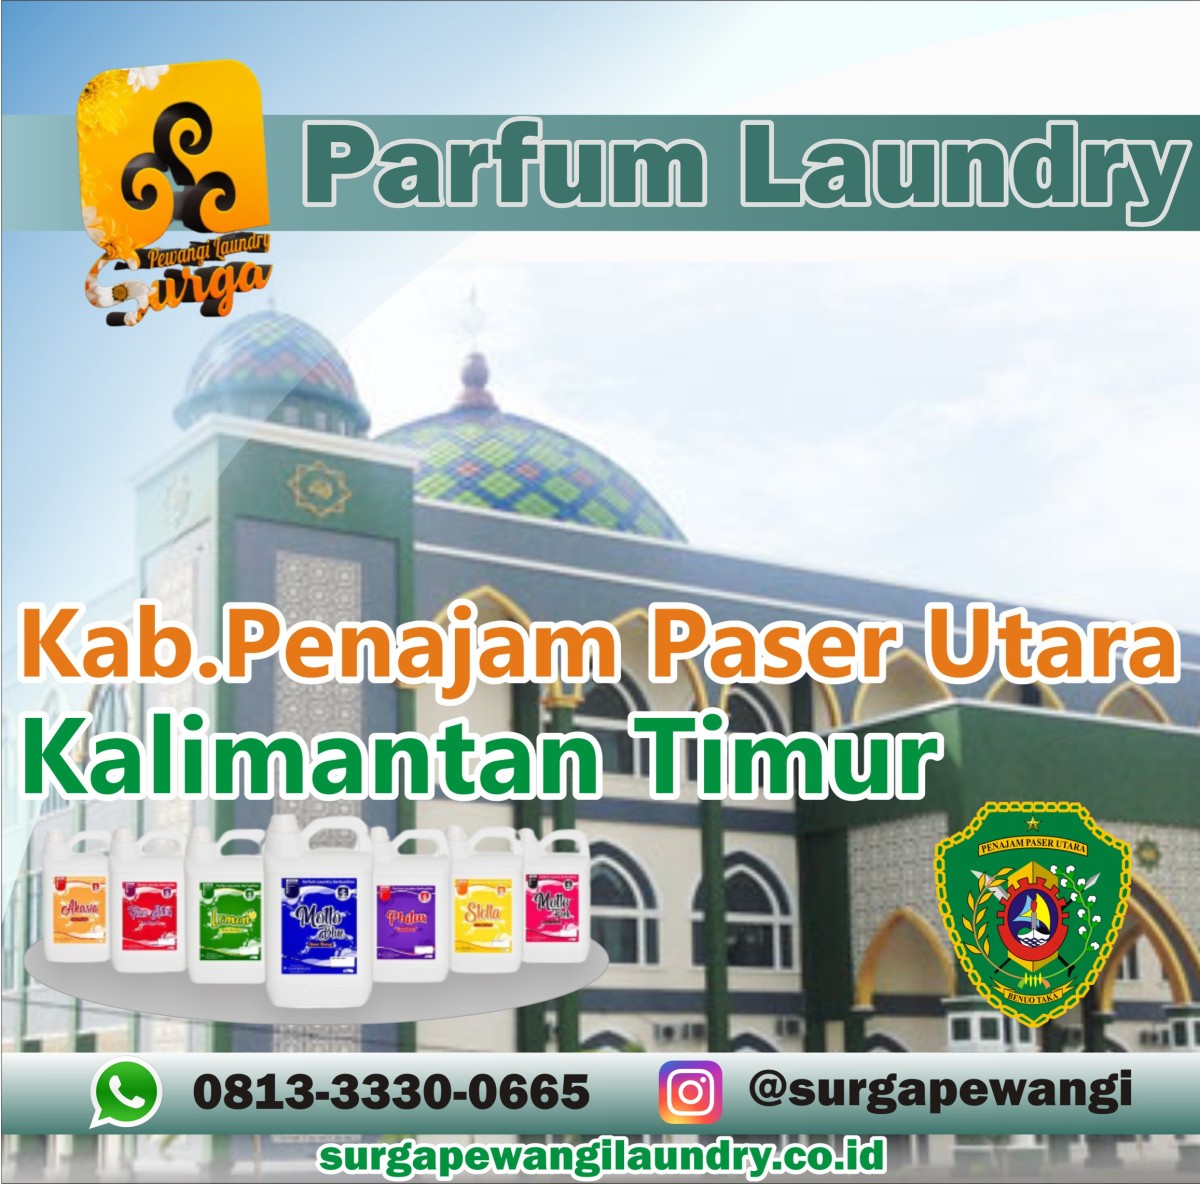 Parfum Laundry Kabupaten Penajam Paser Utara, Kalimantan Timur